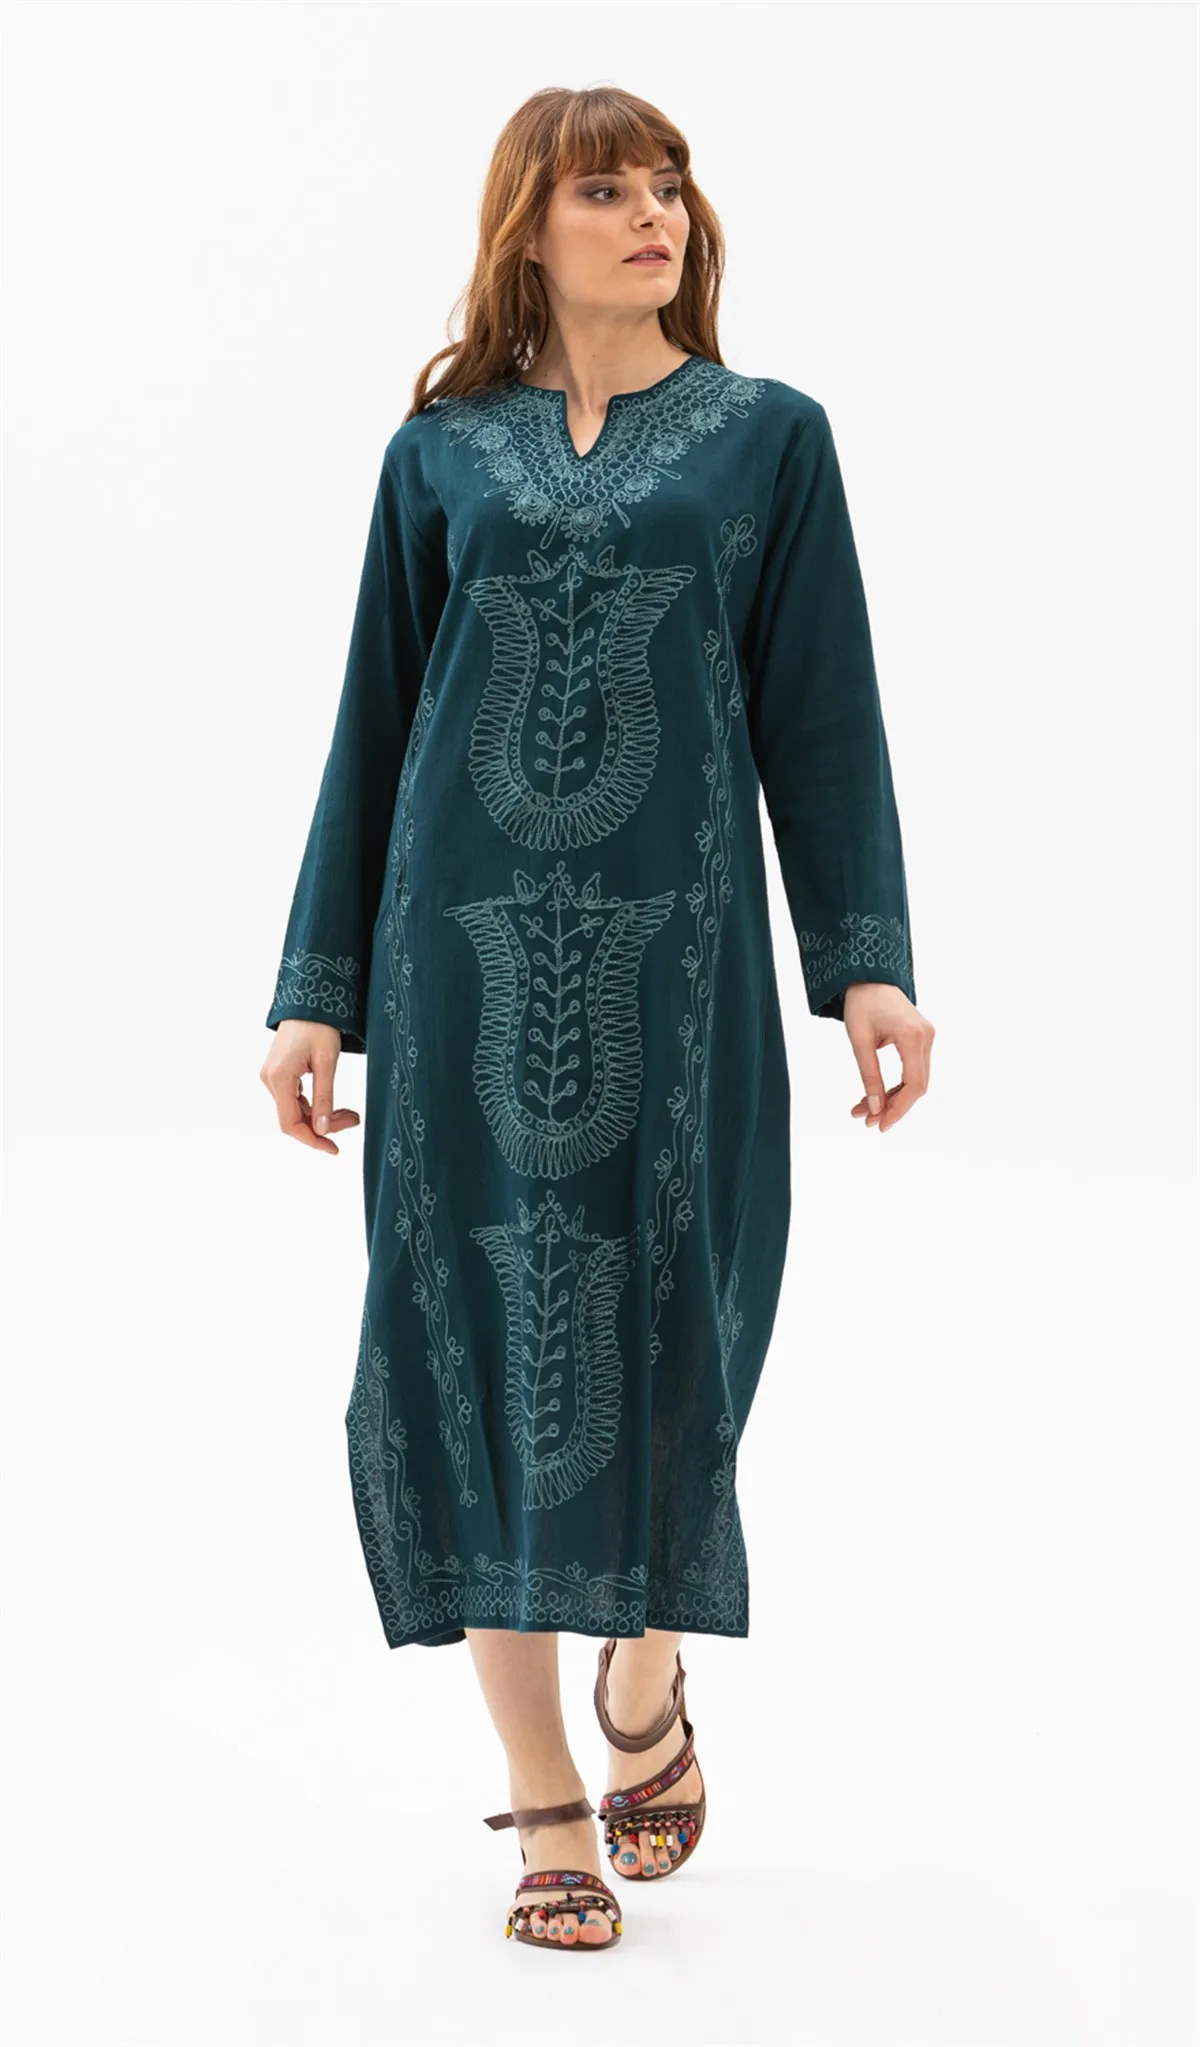 Силе Ткань ручной вышивкой с рисунком Цвет длинные исламский хиджаб мусульманское платье женские модные Дубай Турция коллекции одежды